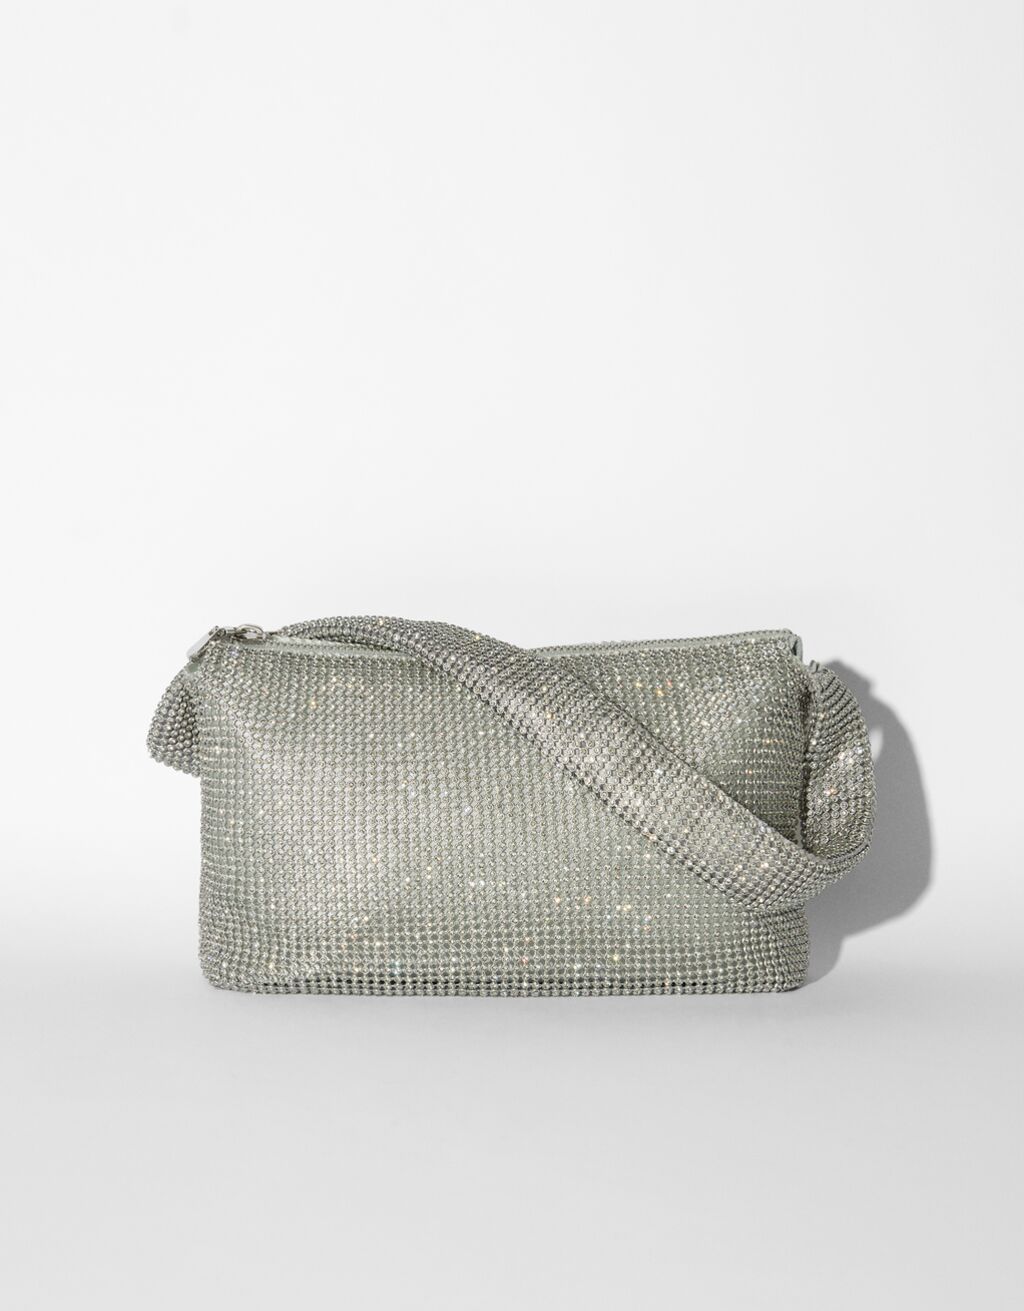 Štrasovaná kabelka s držadlem a detailem kroužku